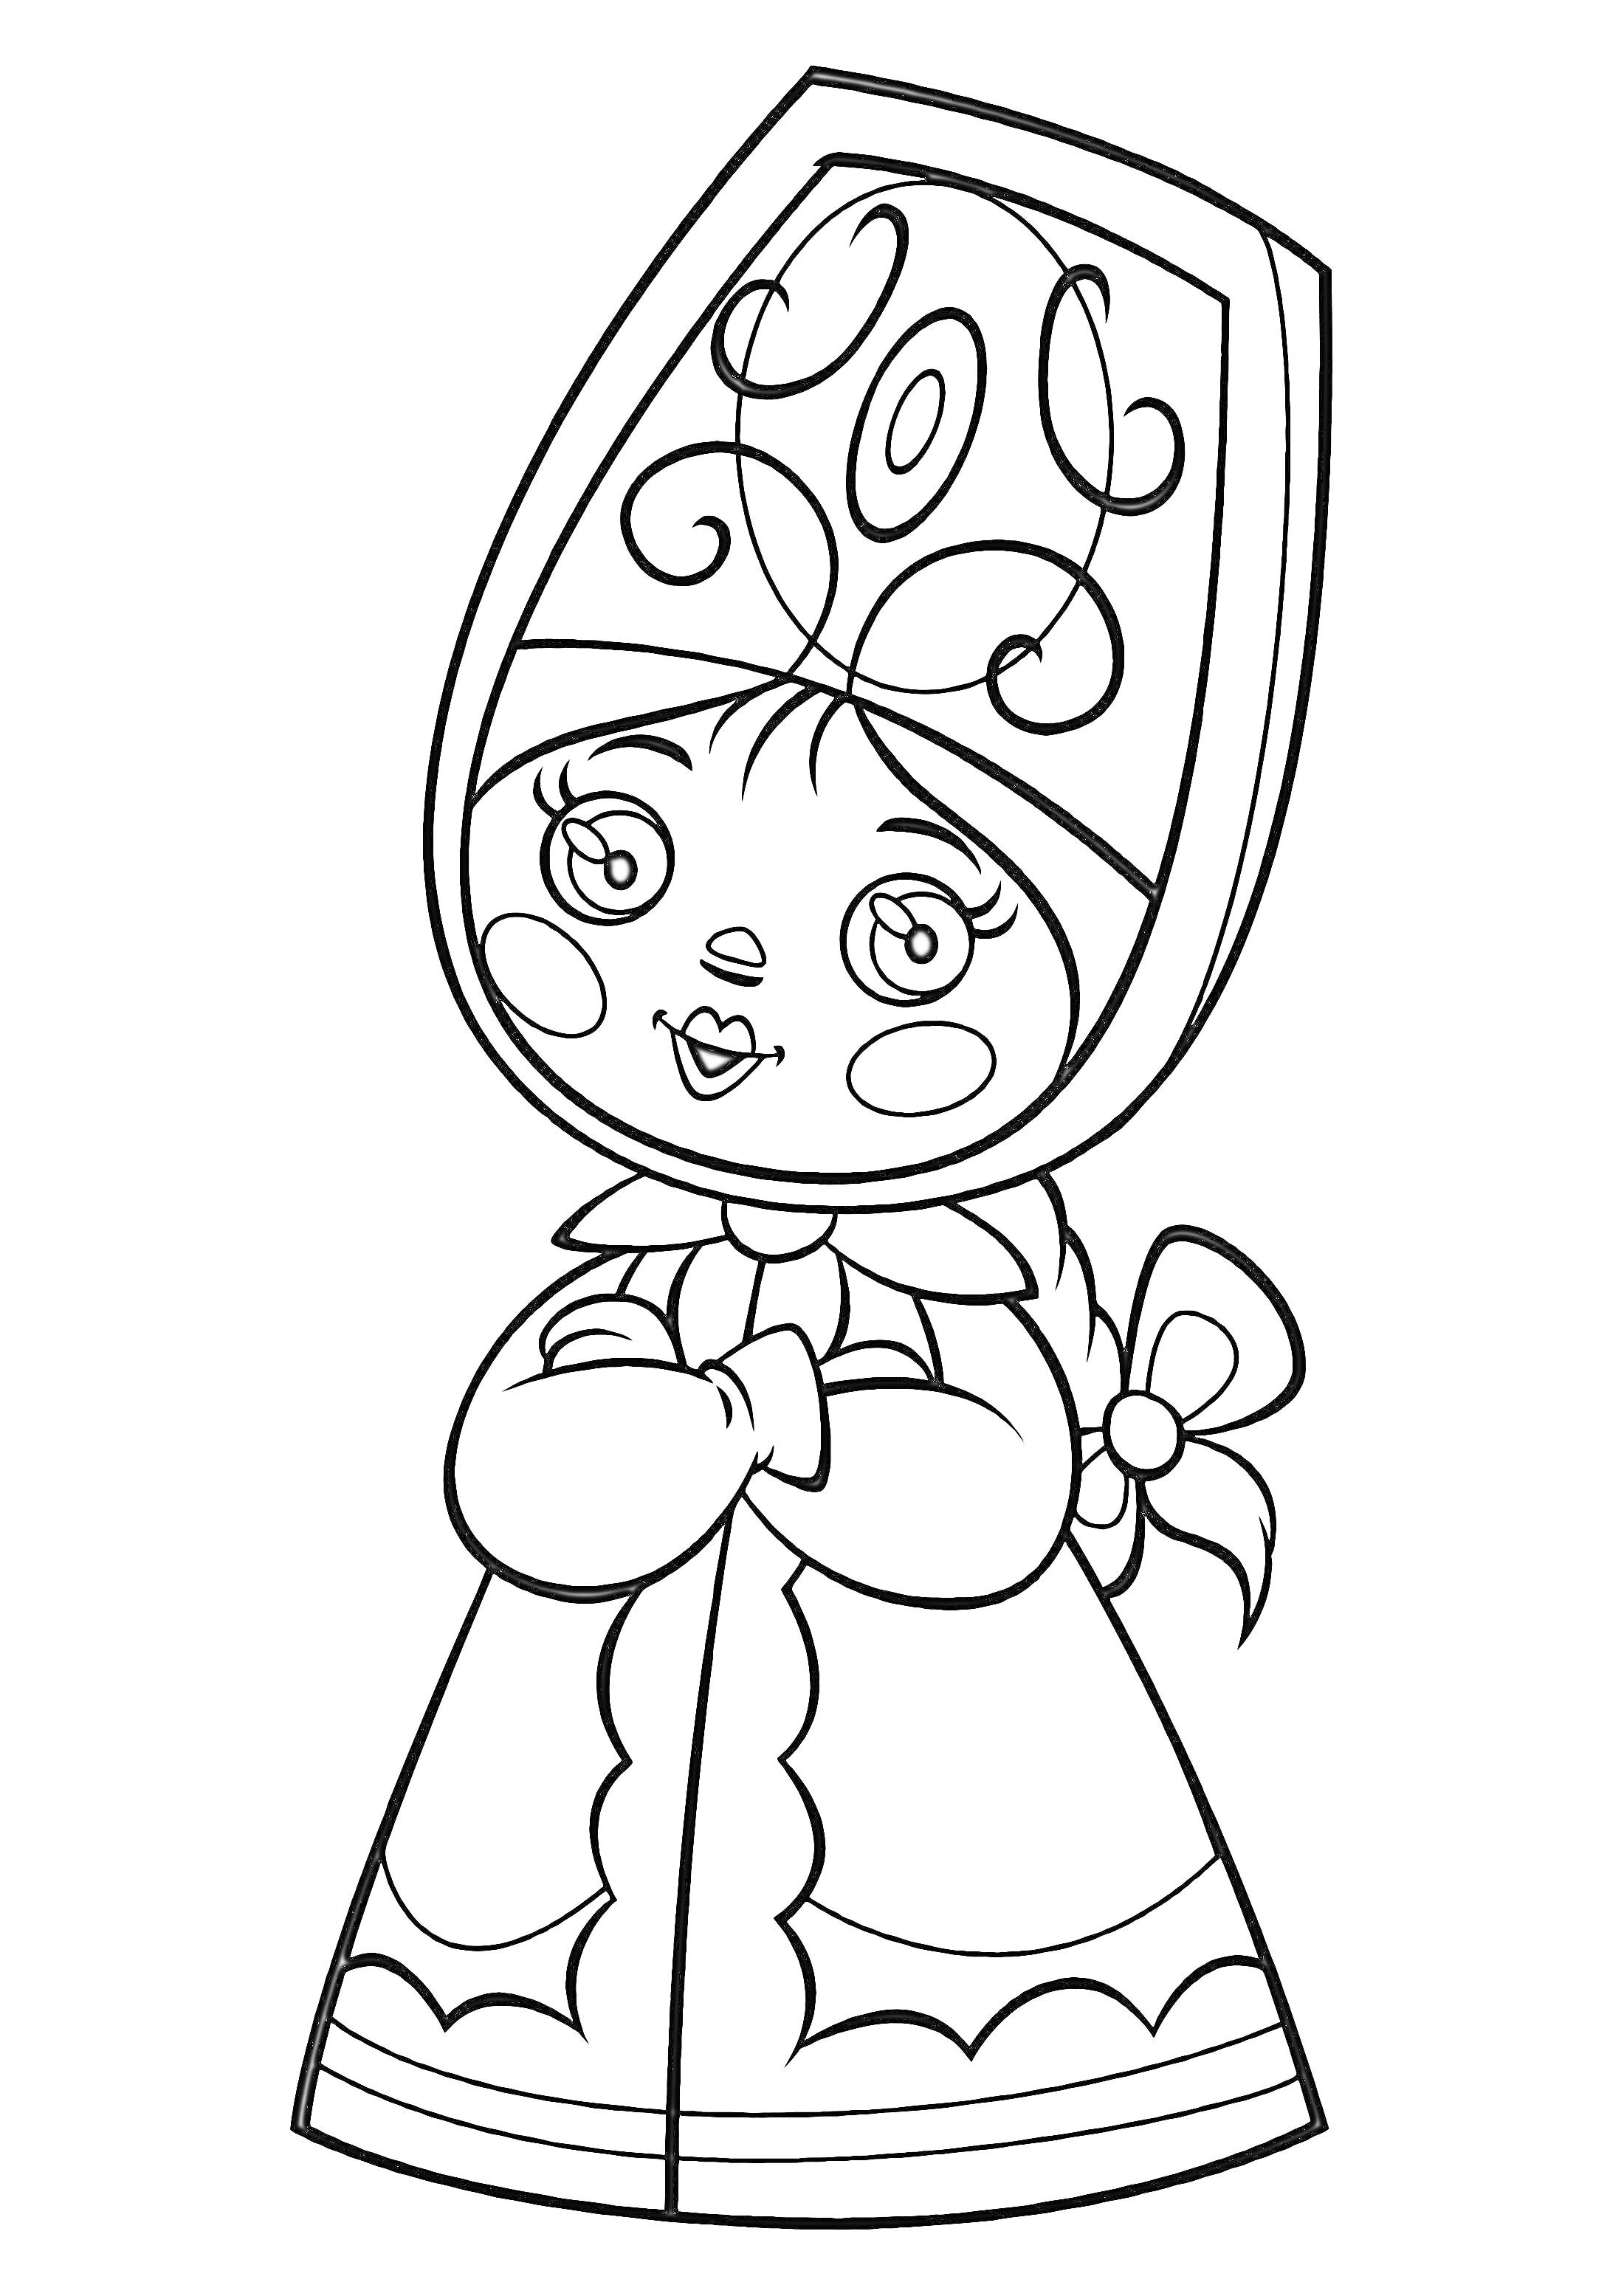 Раскраска Древнерусская девочка в кокошнике